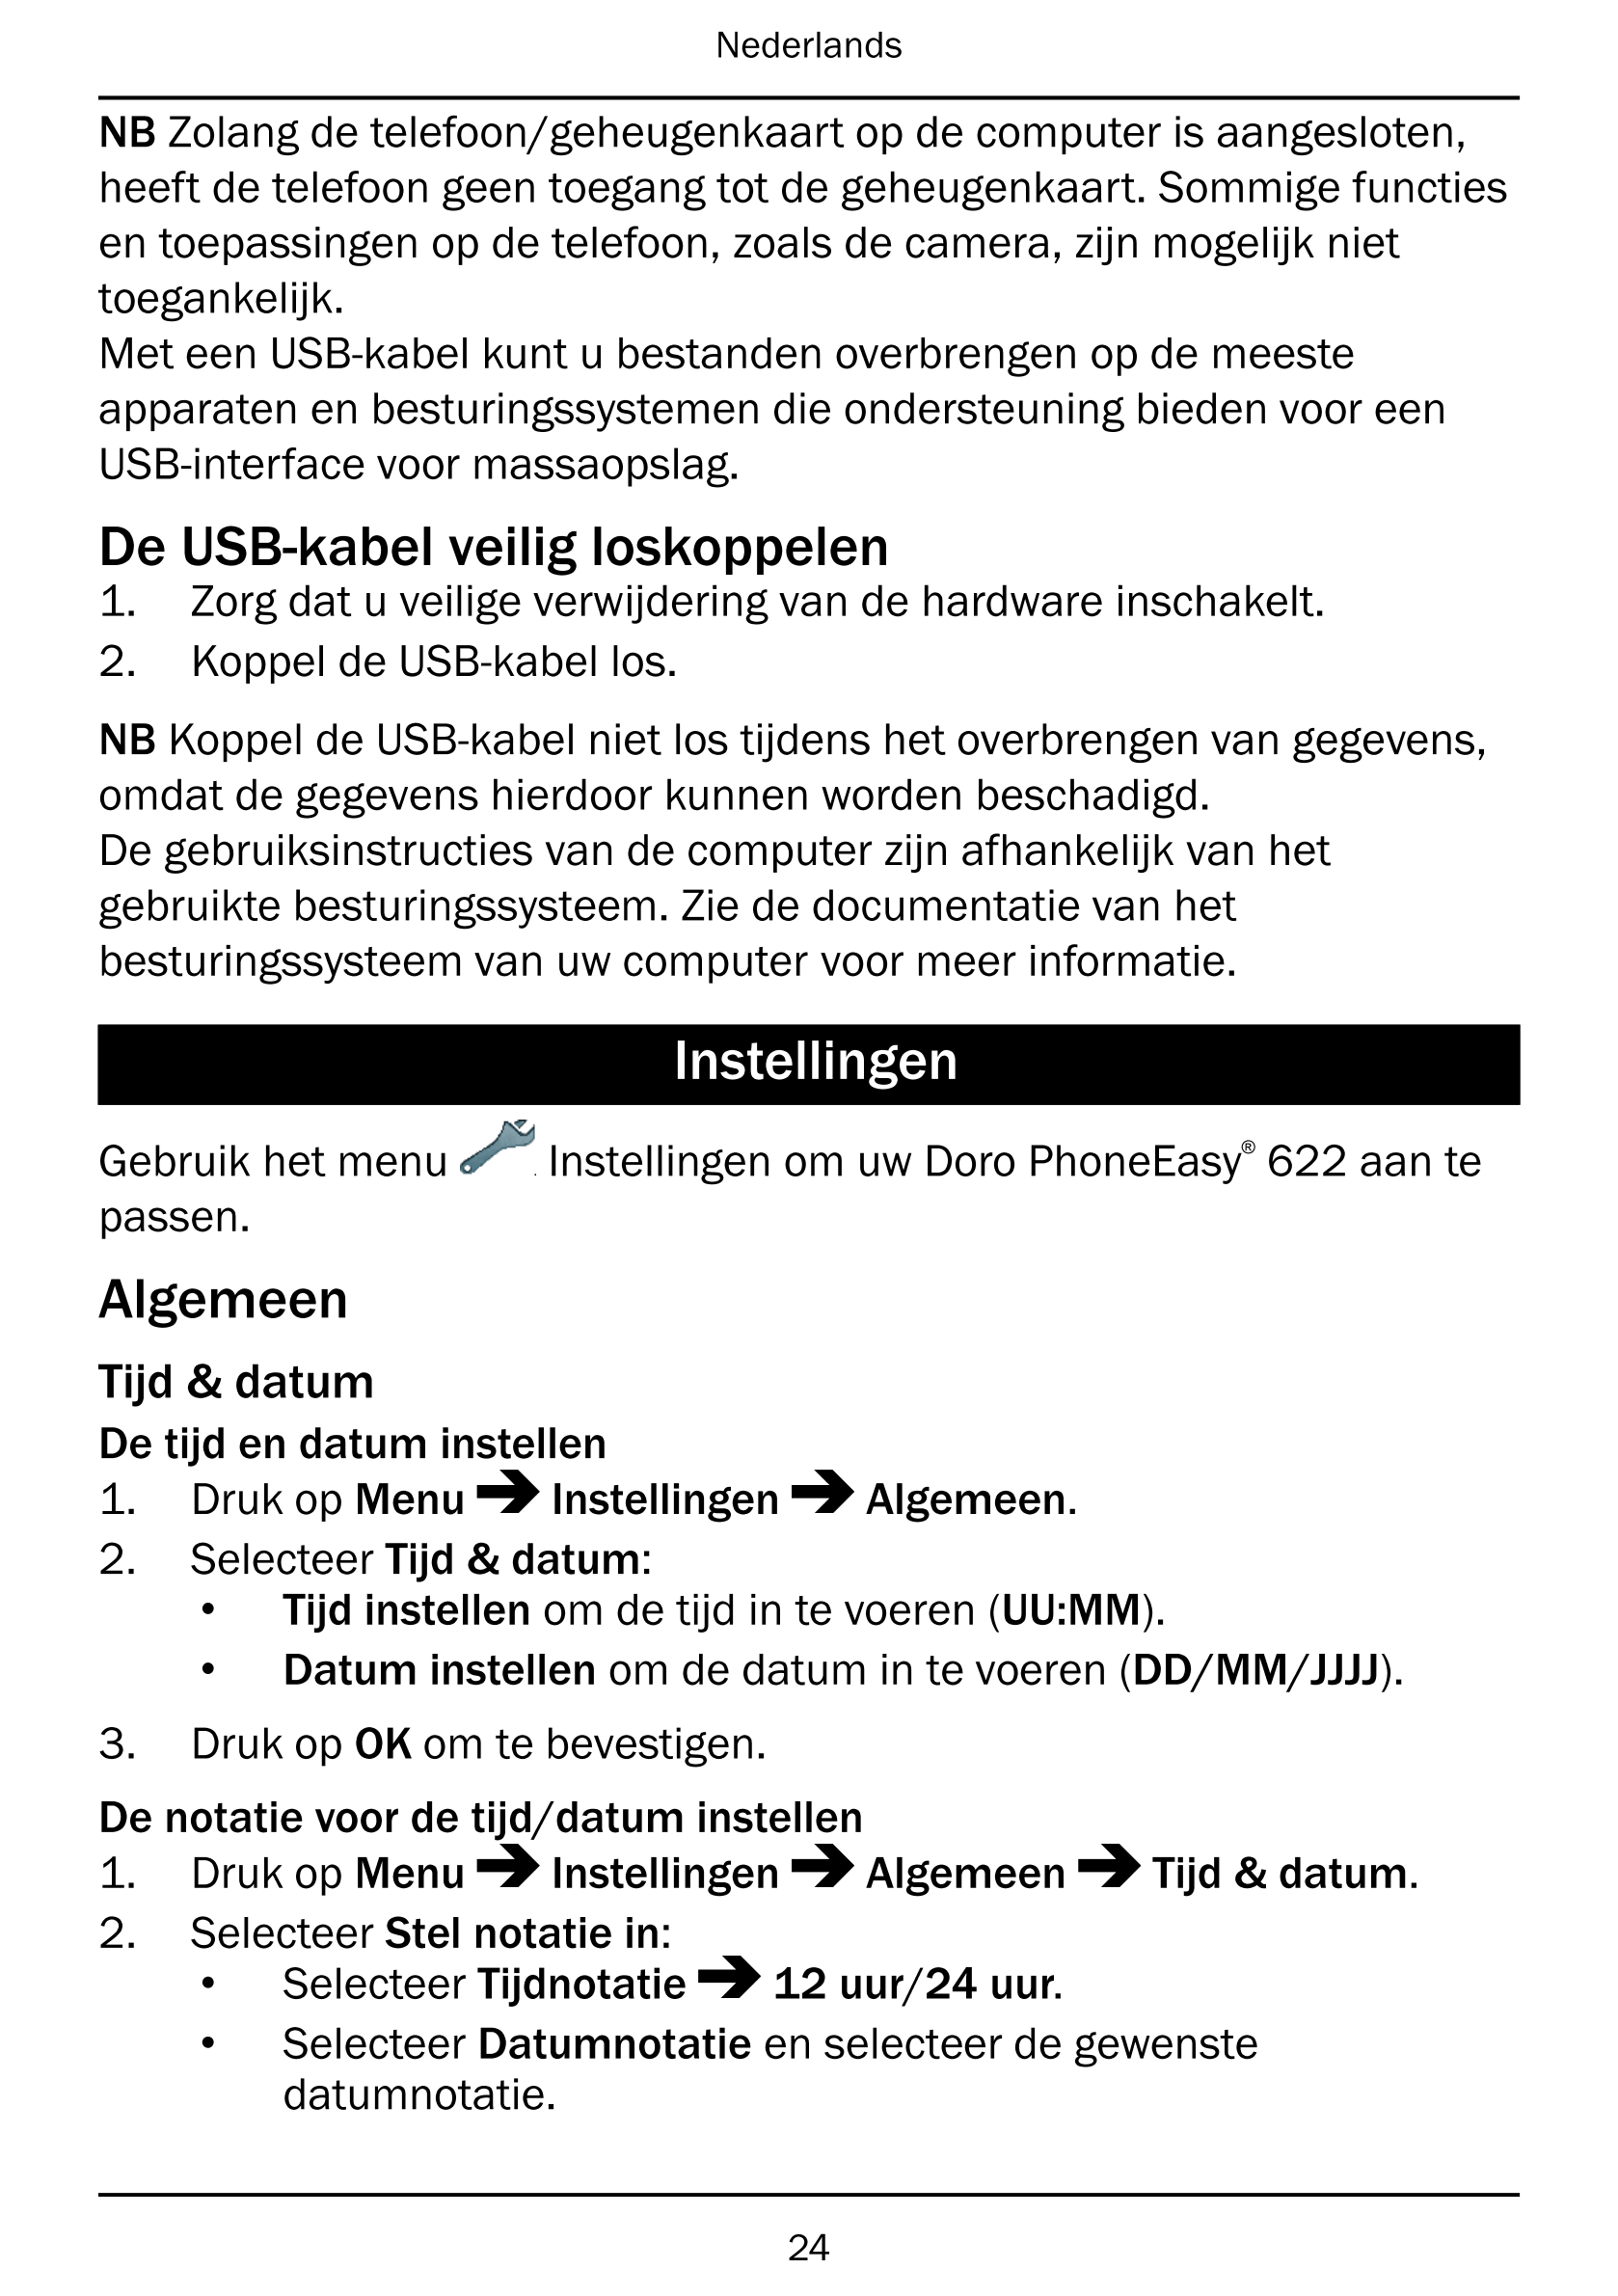 Nederlands
NB Zolang de telefoon/geheugenkaart op de computer is aangesloten,
heeft de telefoon geen toegang tot de geheugenkaar